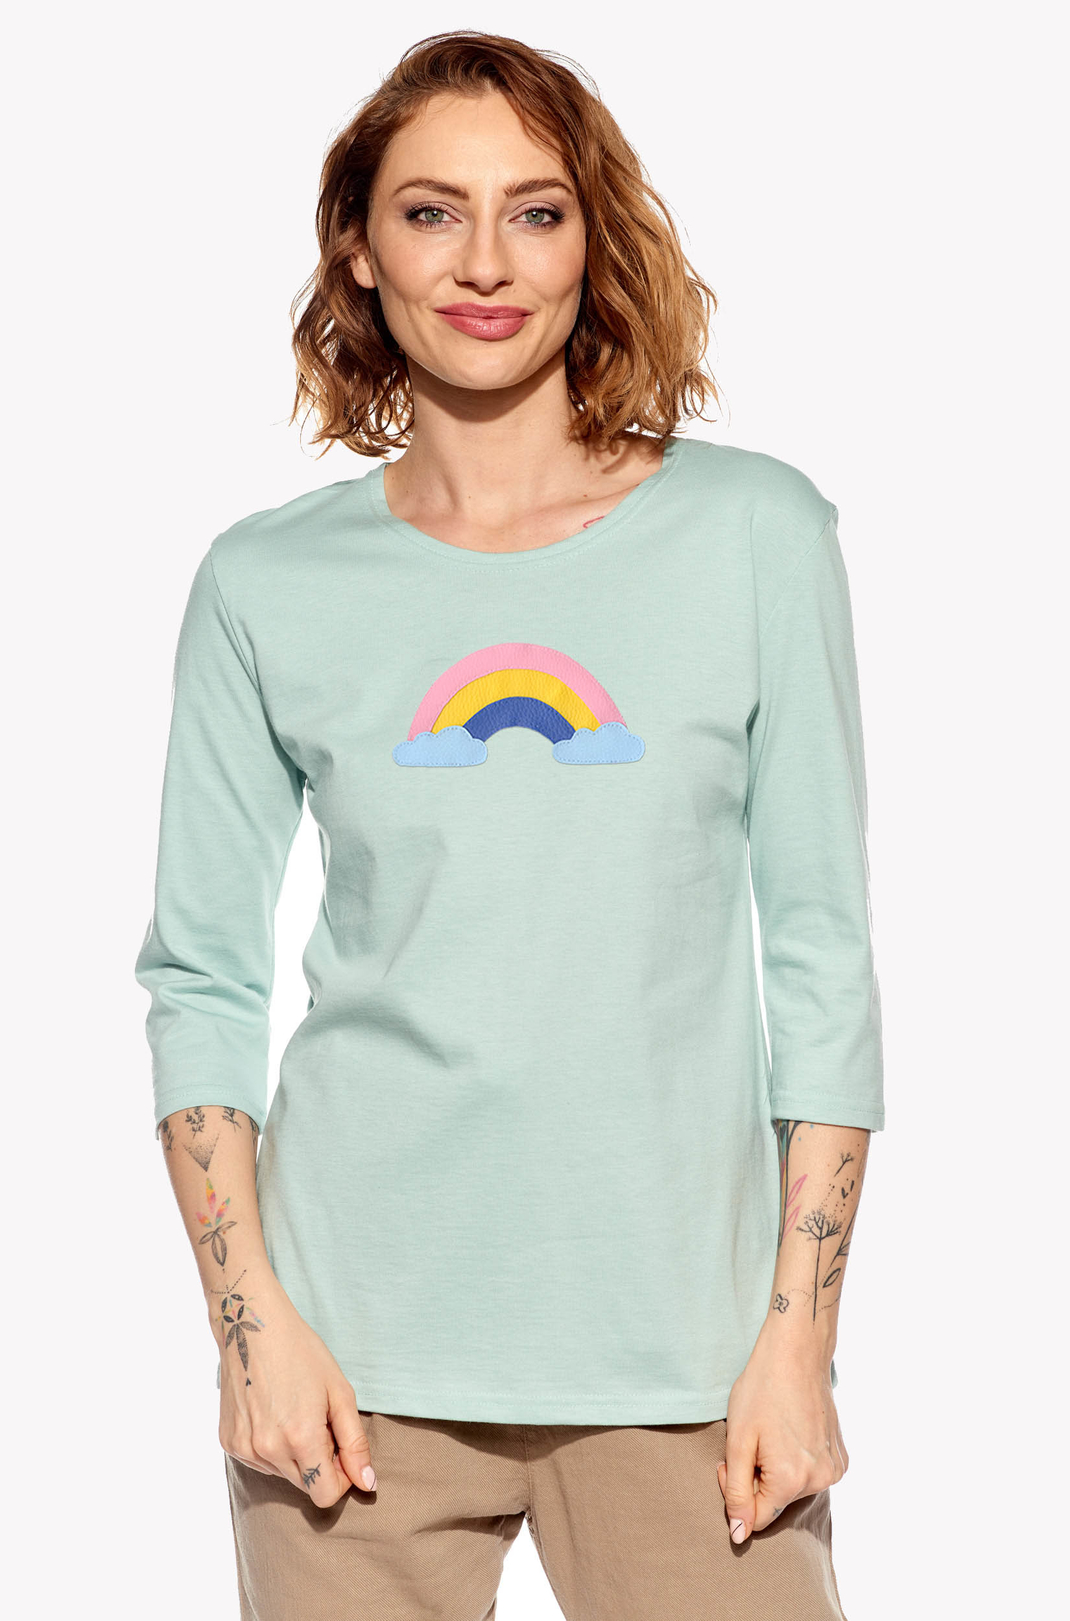 Shirt with a rainbow